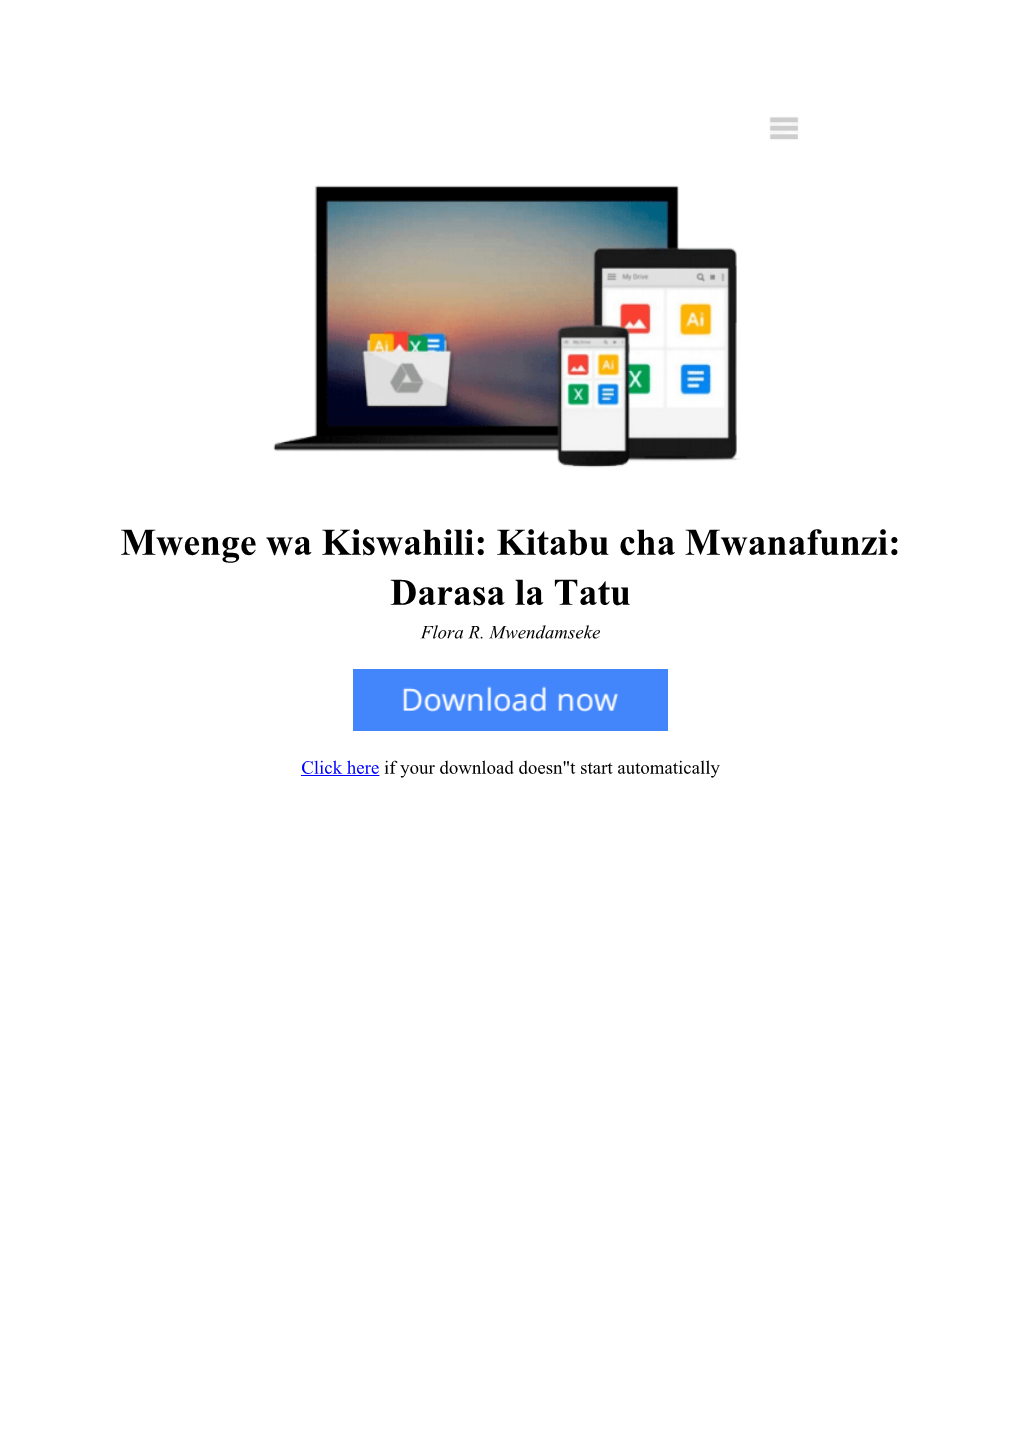 [YSXP]⋙ Mwenge Wa Kiswahili: Kitabu Cha Mwanafunzi: Darasa La